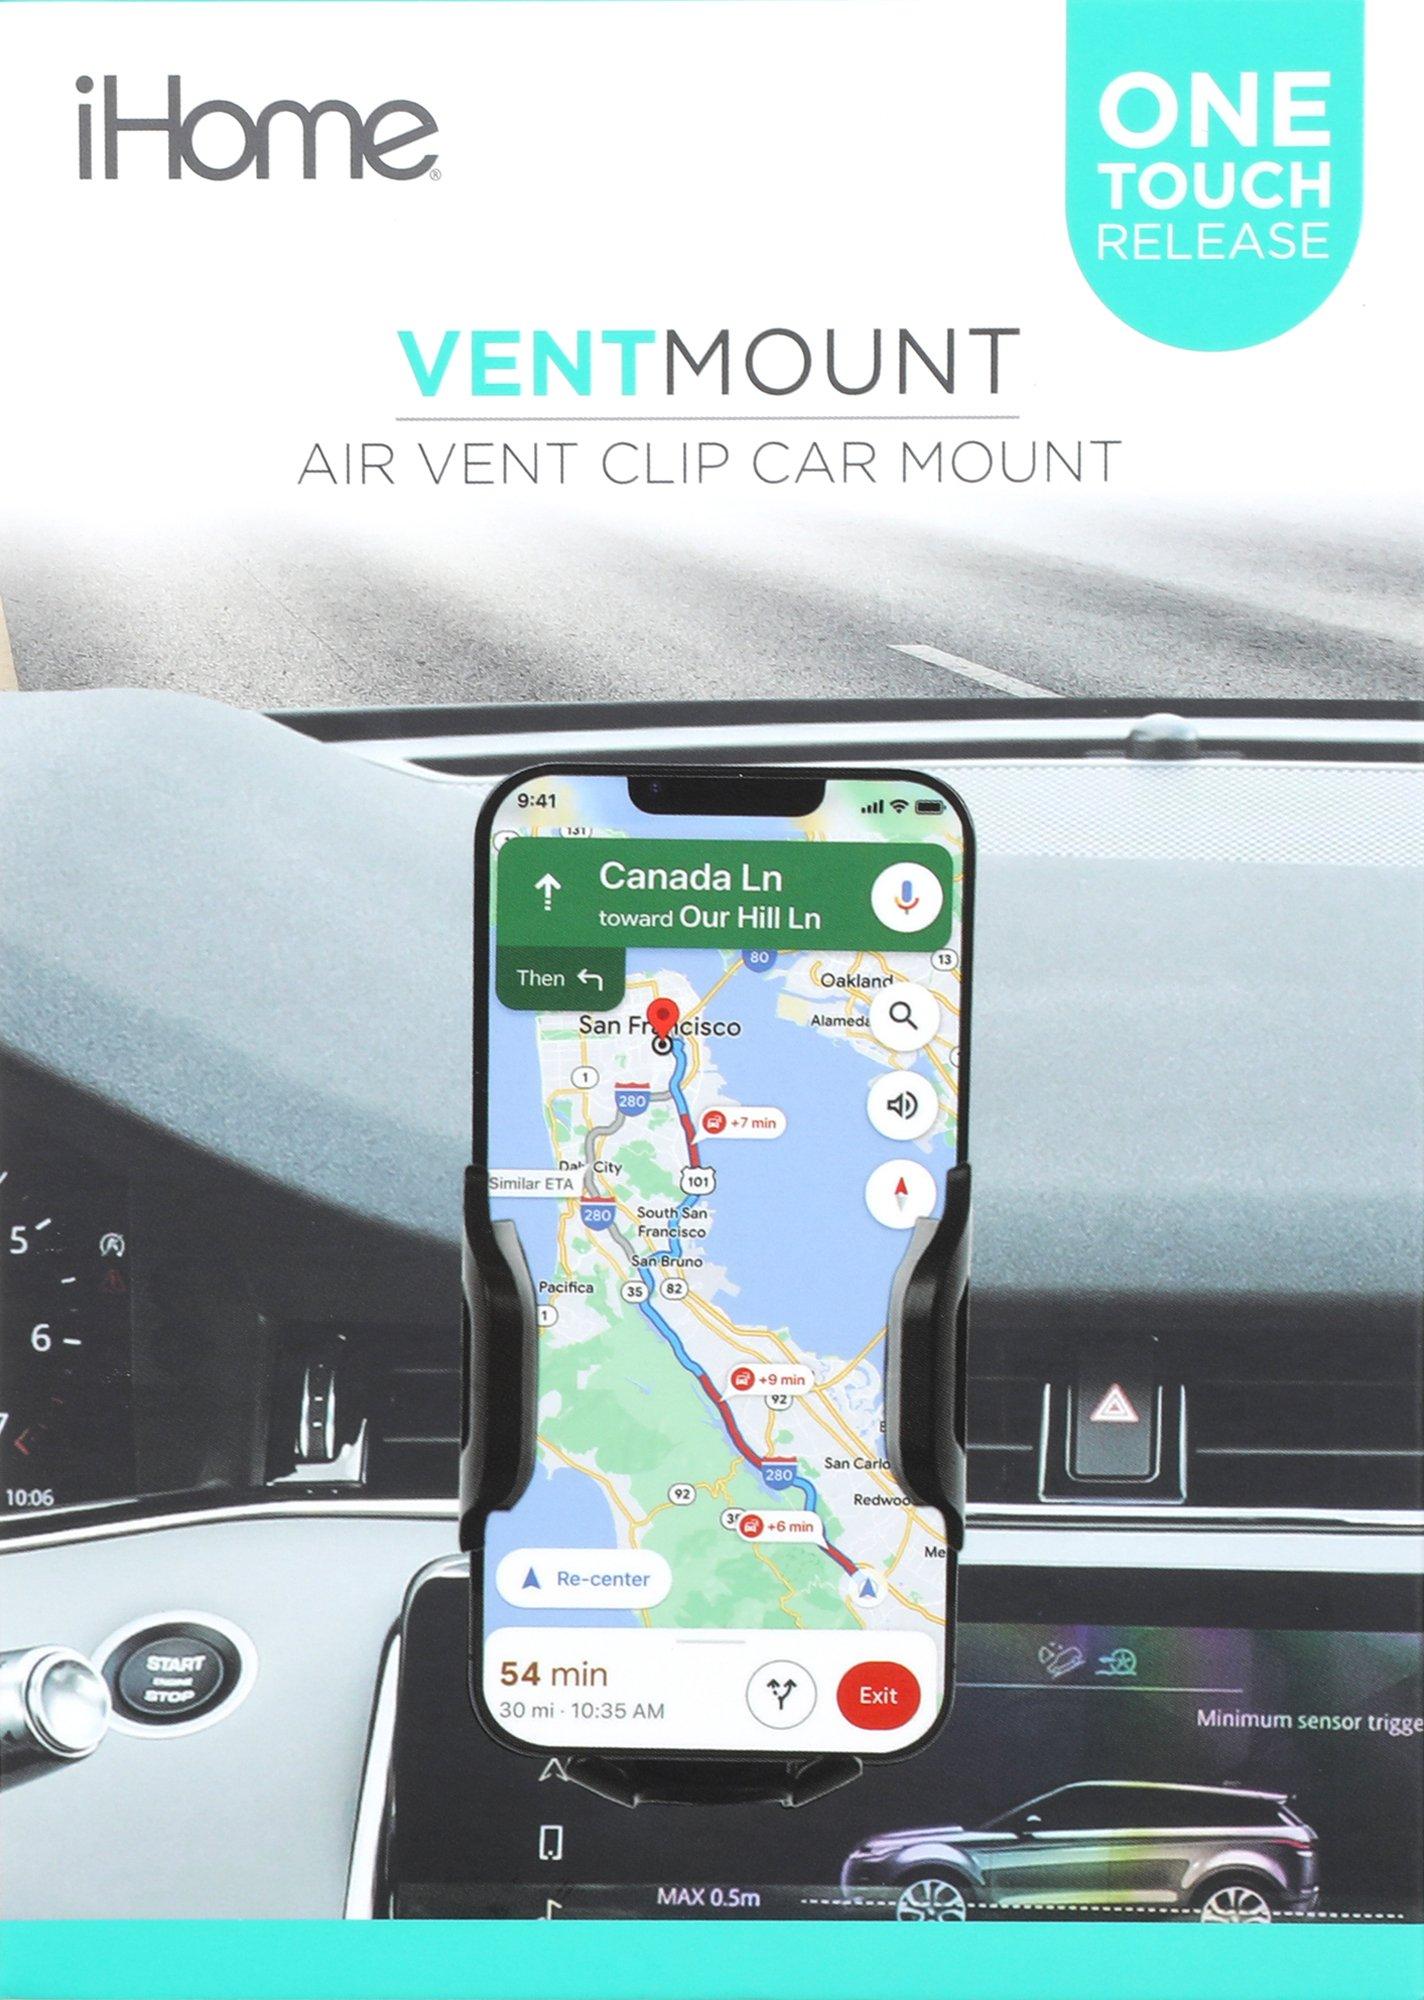 Air Vent Clip Car Mount